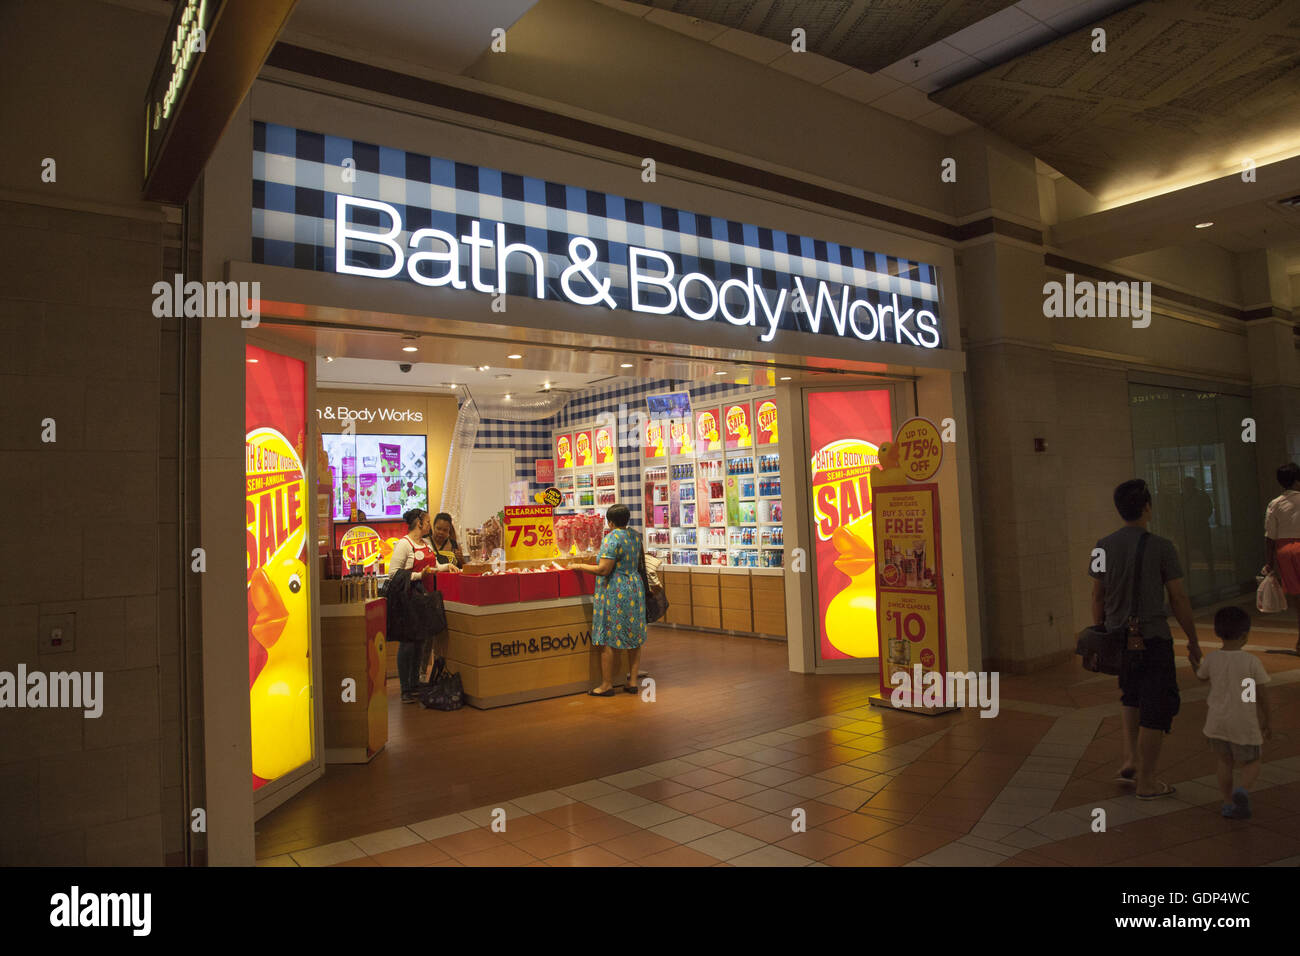 Bath & body works Banque de photographies et d'images à haute résolution -  Alamy